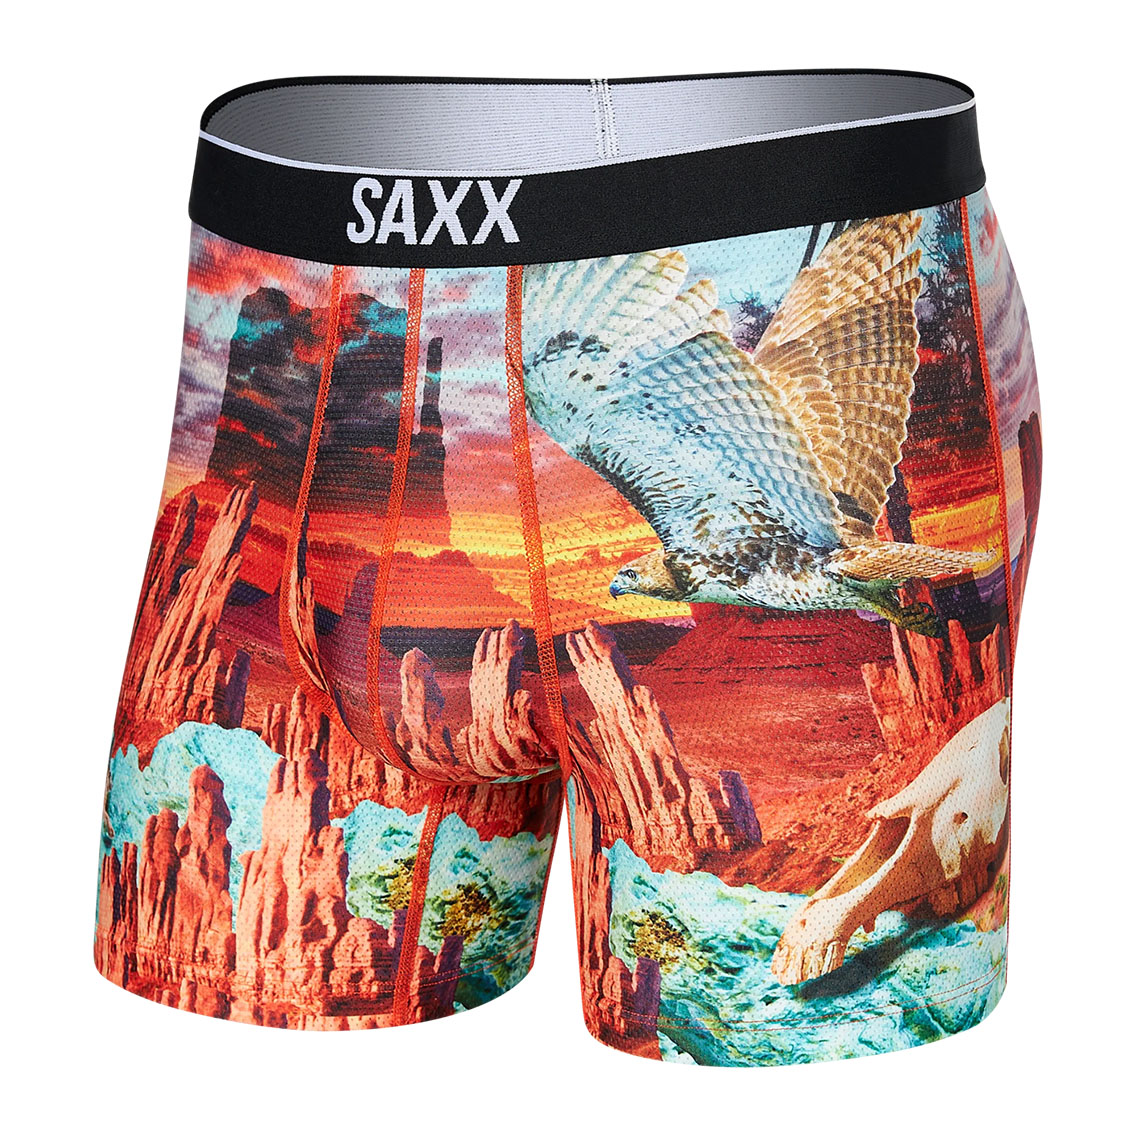 [SXBB29-MVM] SAXX サックス ボクサーパンツ メンズ アンダーウェア インナー 男性 下着 ブランド おすすめ 人気 プレゼント